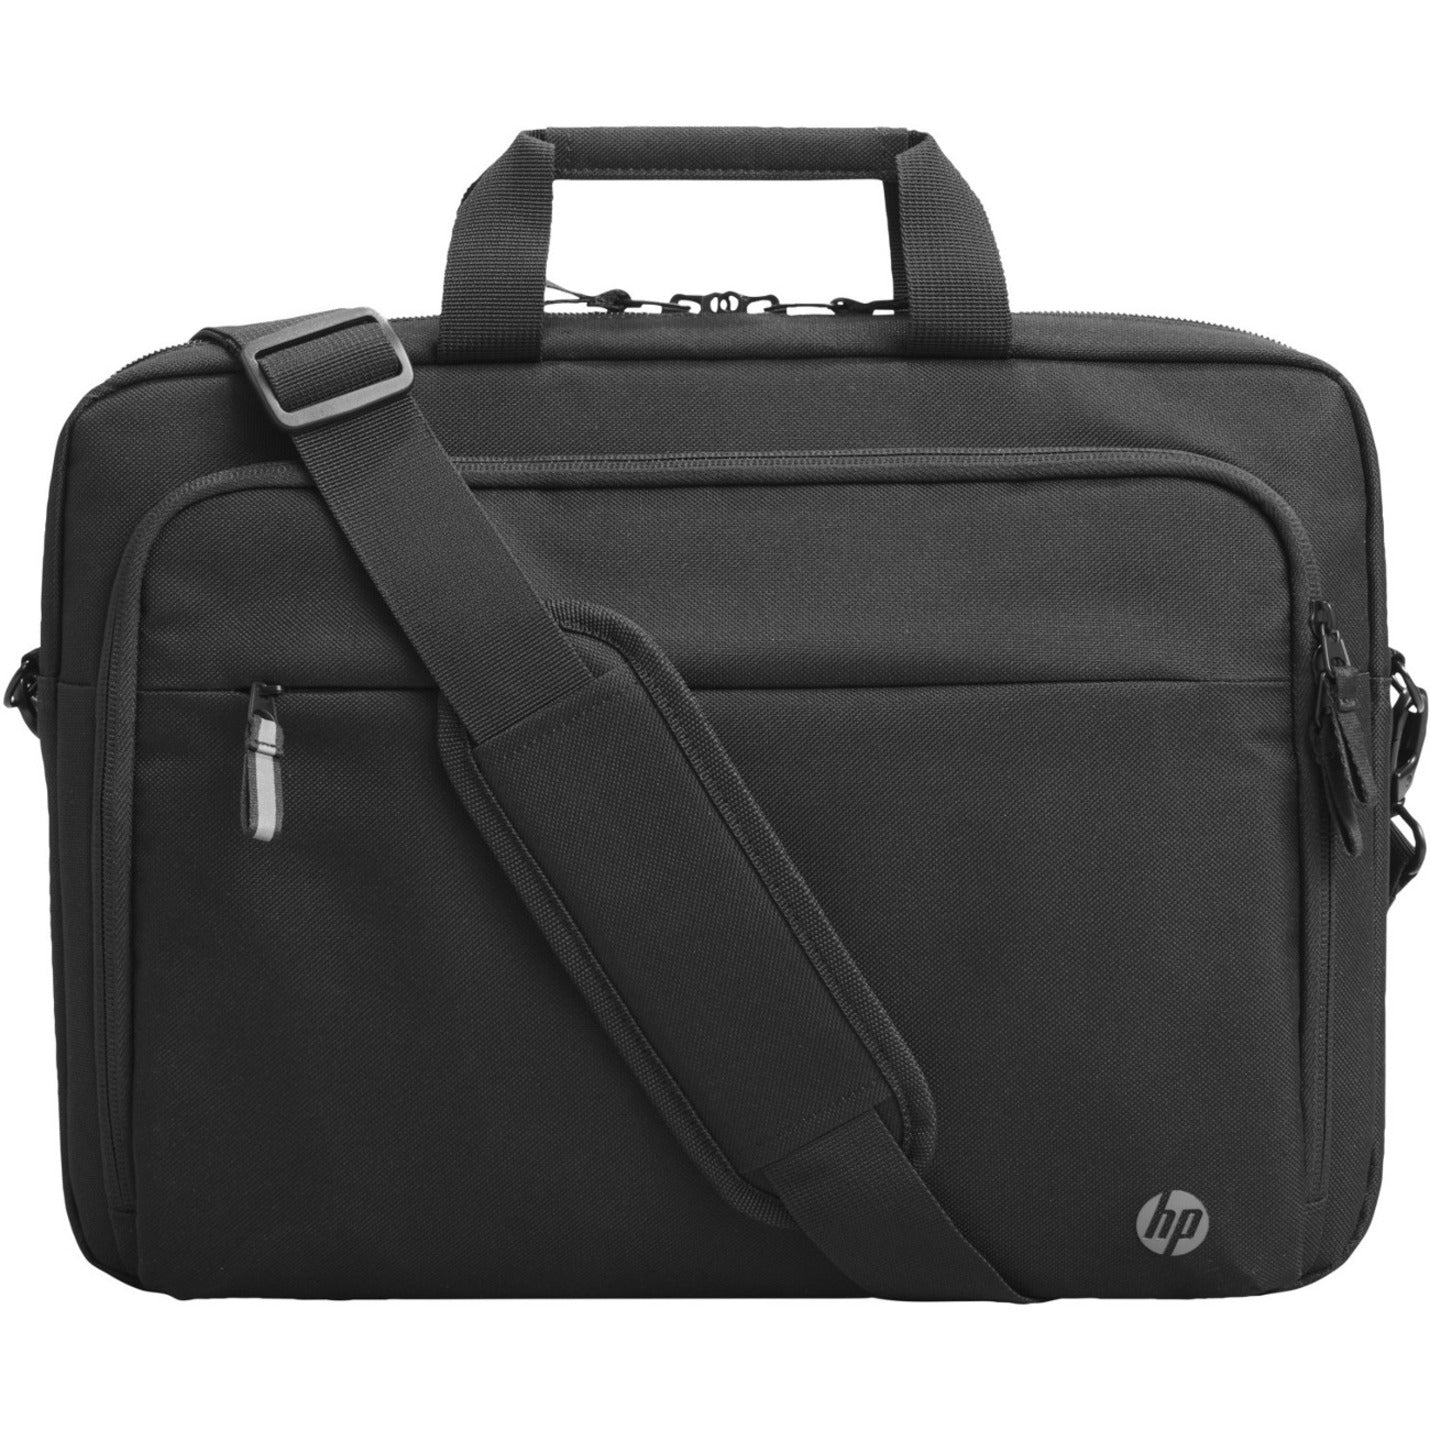 عنوان المنتج: حقيبة لابتوب HP 3E5F8UT Renew Business بحجم 15.6 بوصة، غطاء، مقاومة للماء، حزام للمتكأ، حزام كتف، مقبض العلامة التجارية: HP اسم العلامة التجارية: اتش بي